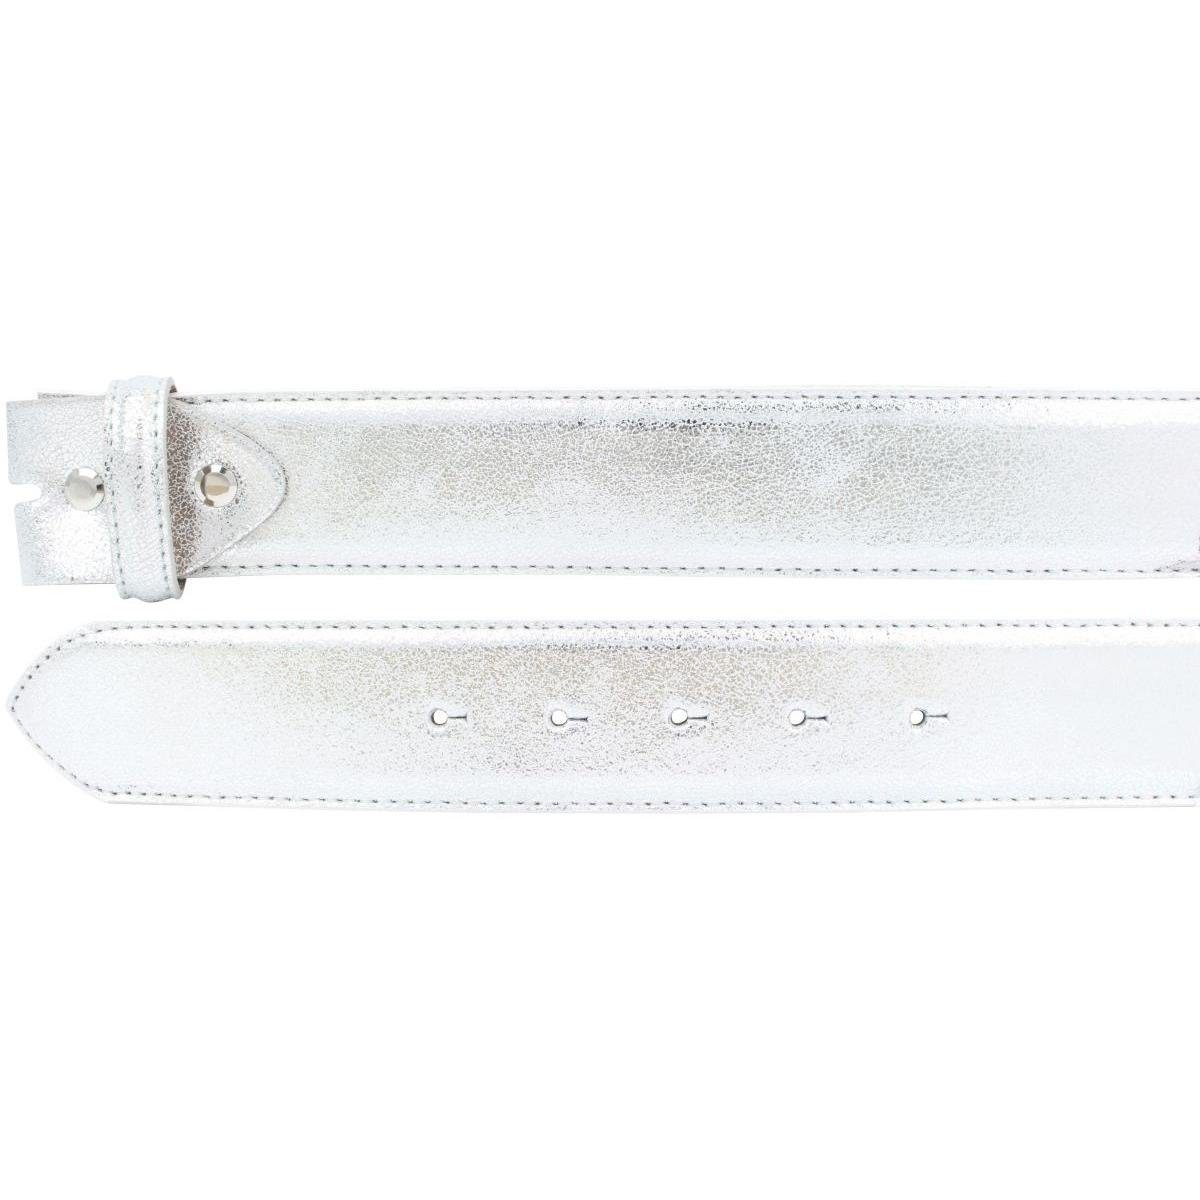 Silber - Ledergürtel Metall-Optik Leder 4 Meta Echt Schnalle BELTINGER ohne Hochwertiger Gürtel cm